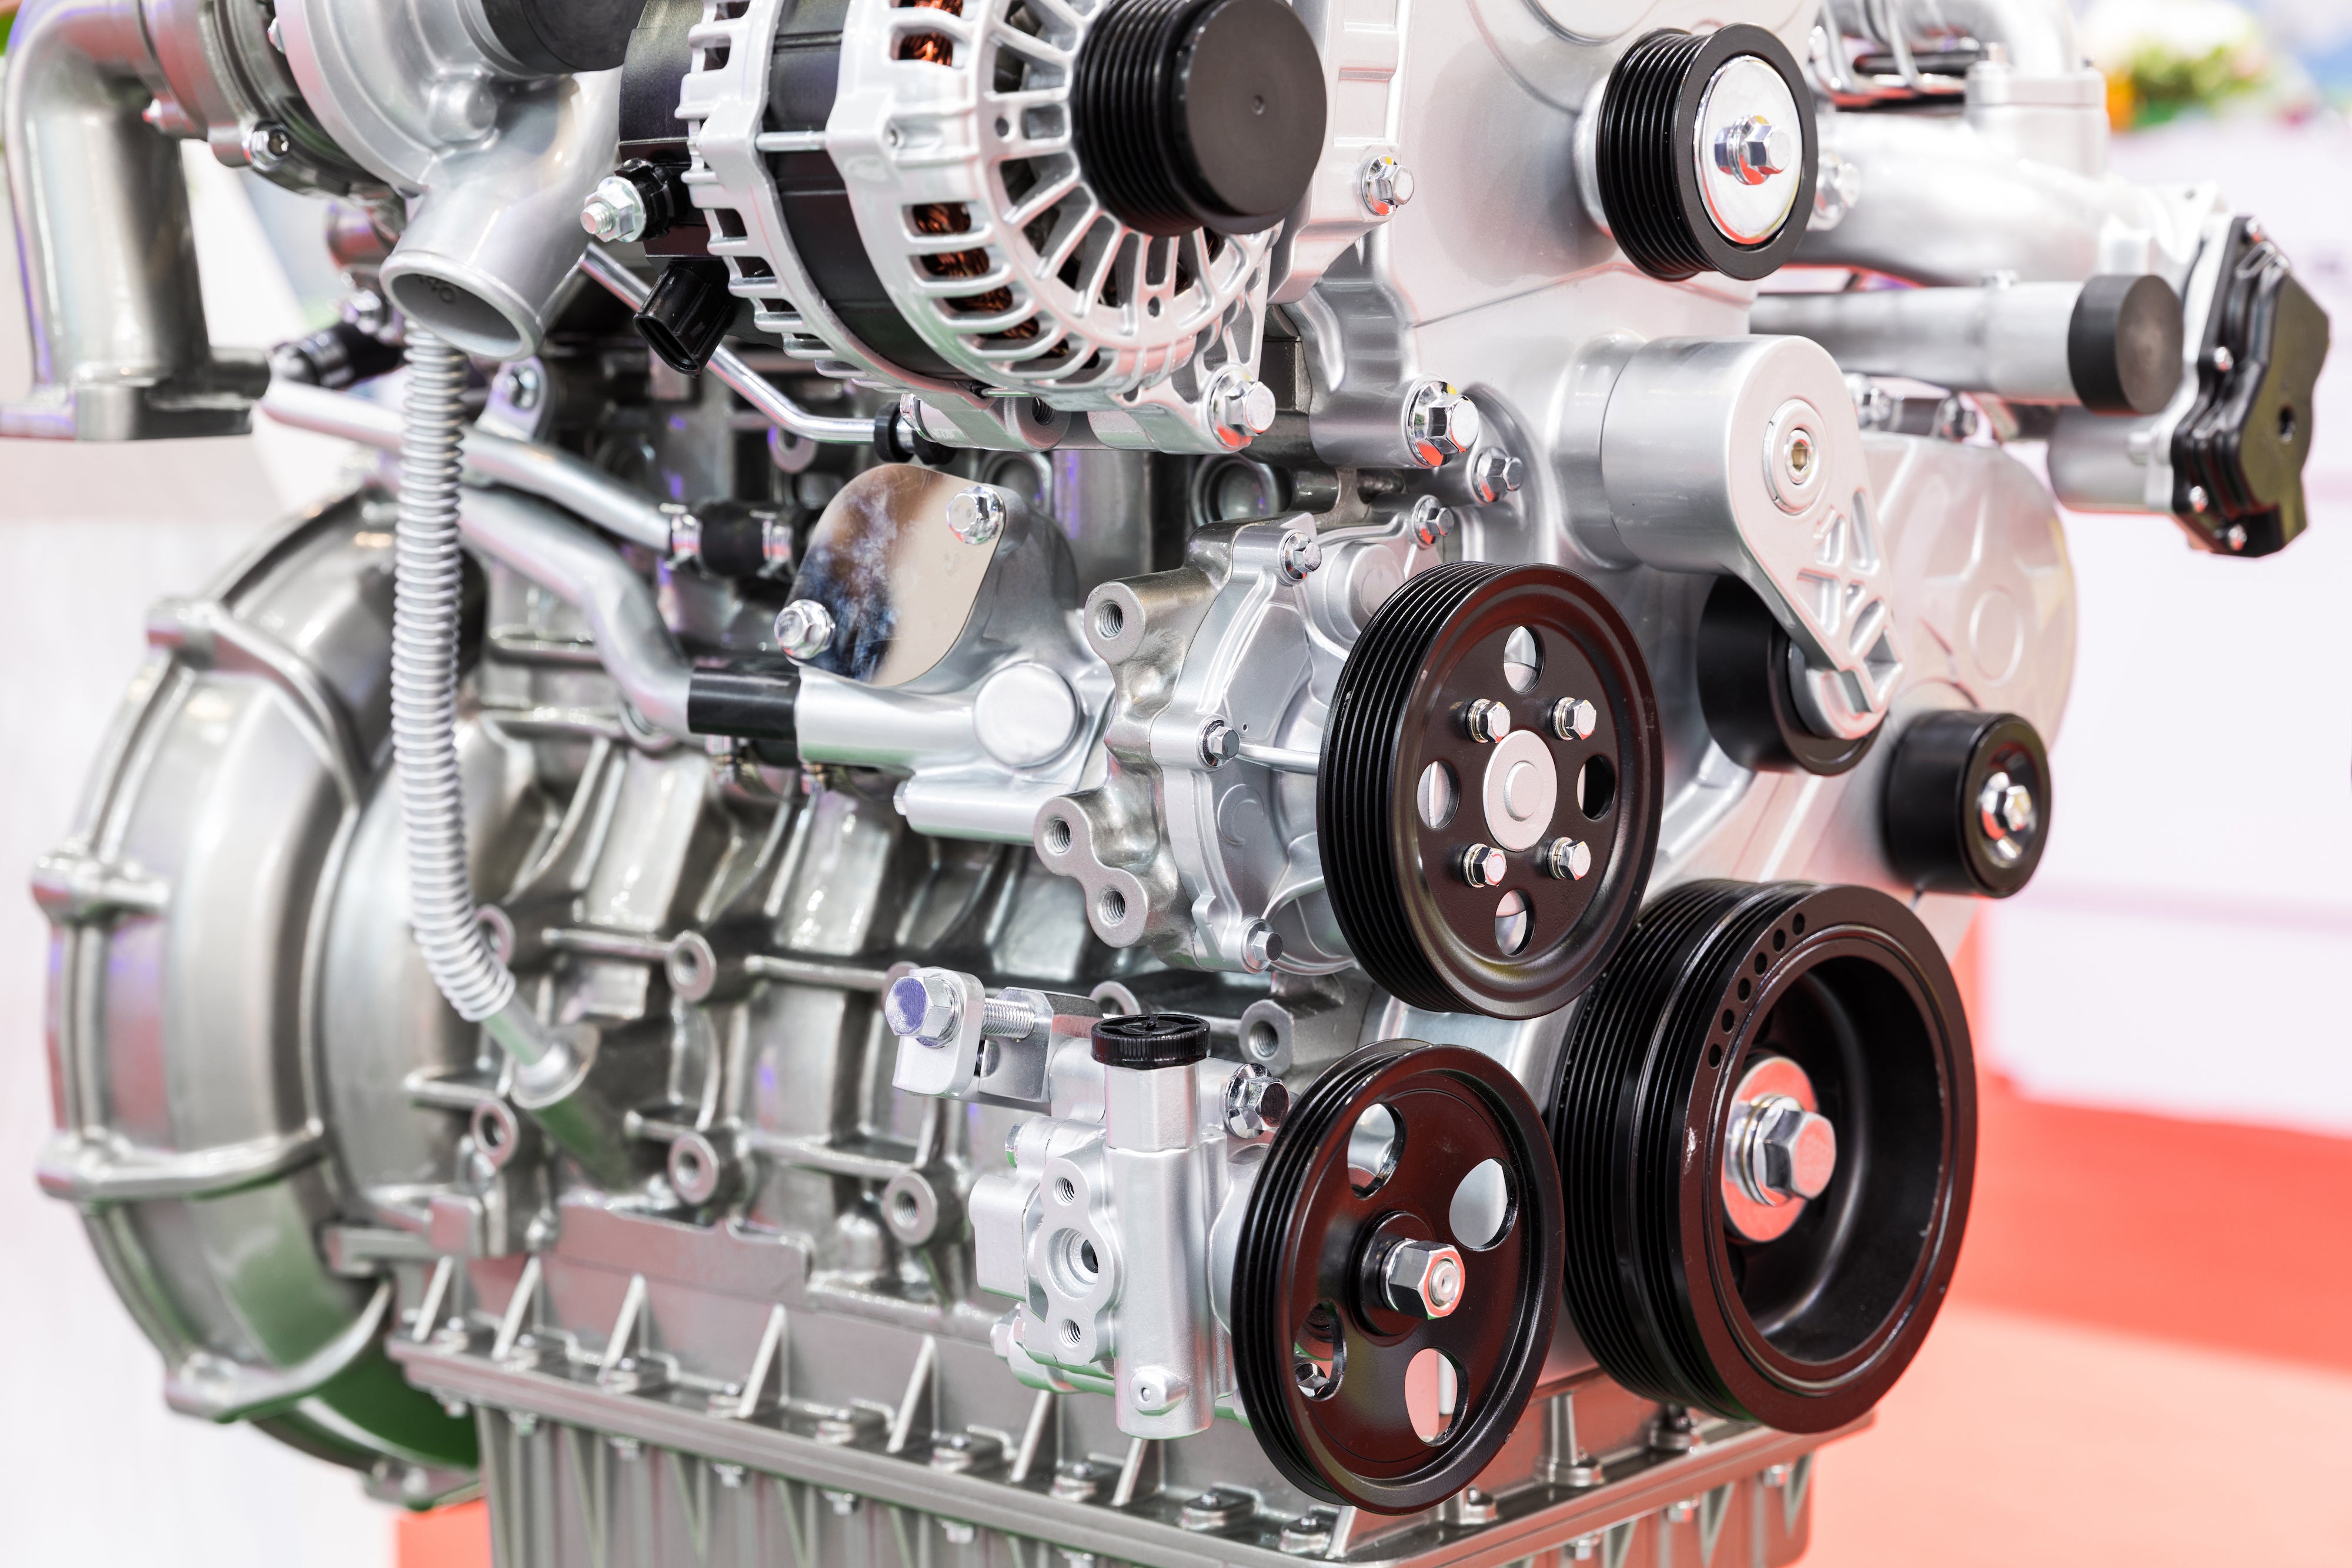 A close up of a car engine